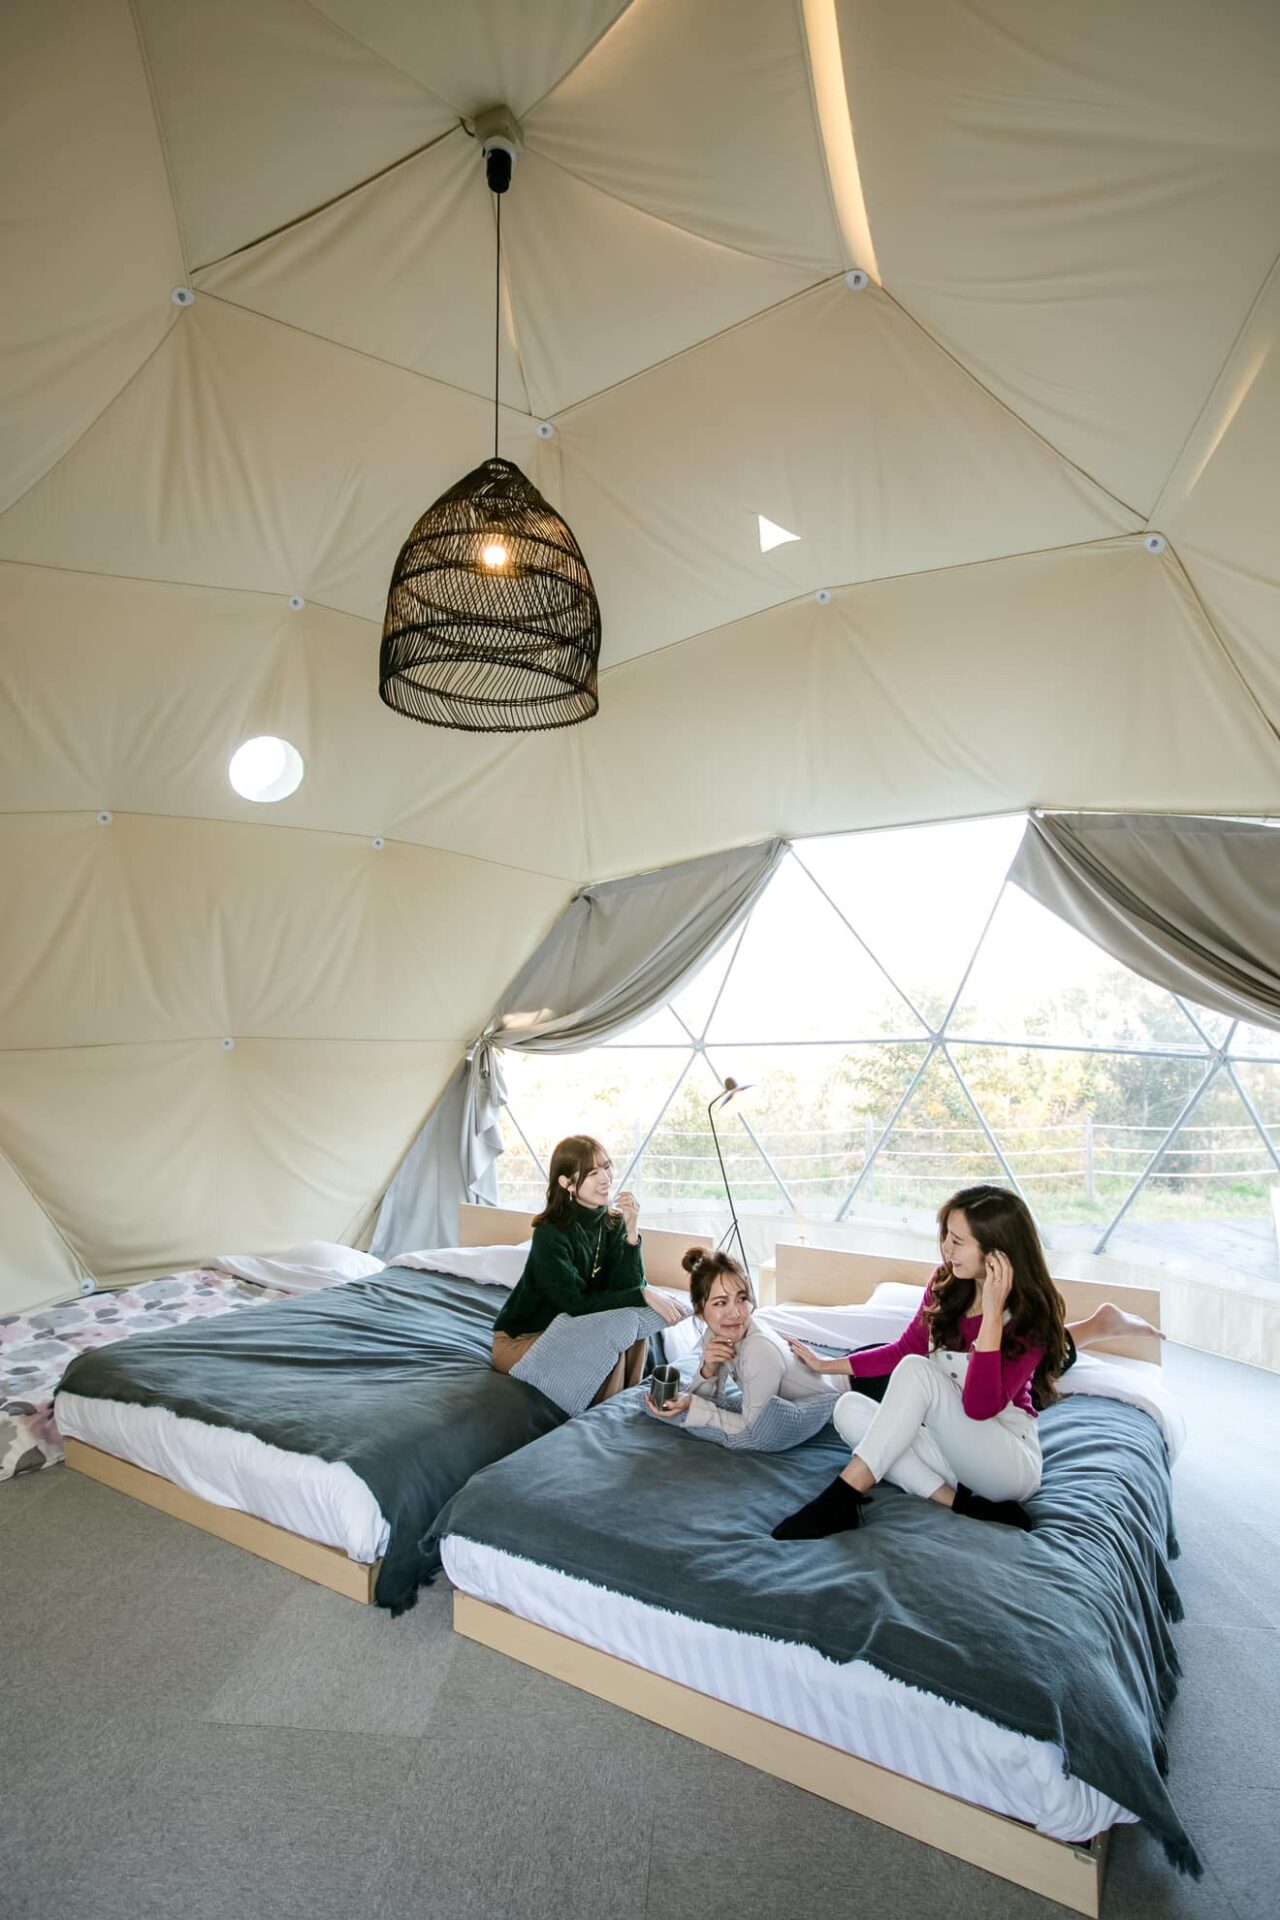 【日本三重縣】日本旅遊豪華露營glamp Dome穹頂屋住宿空間寬敞